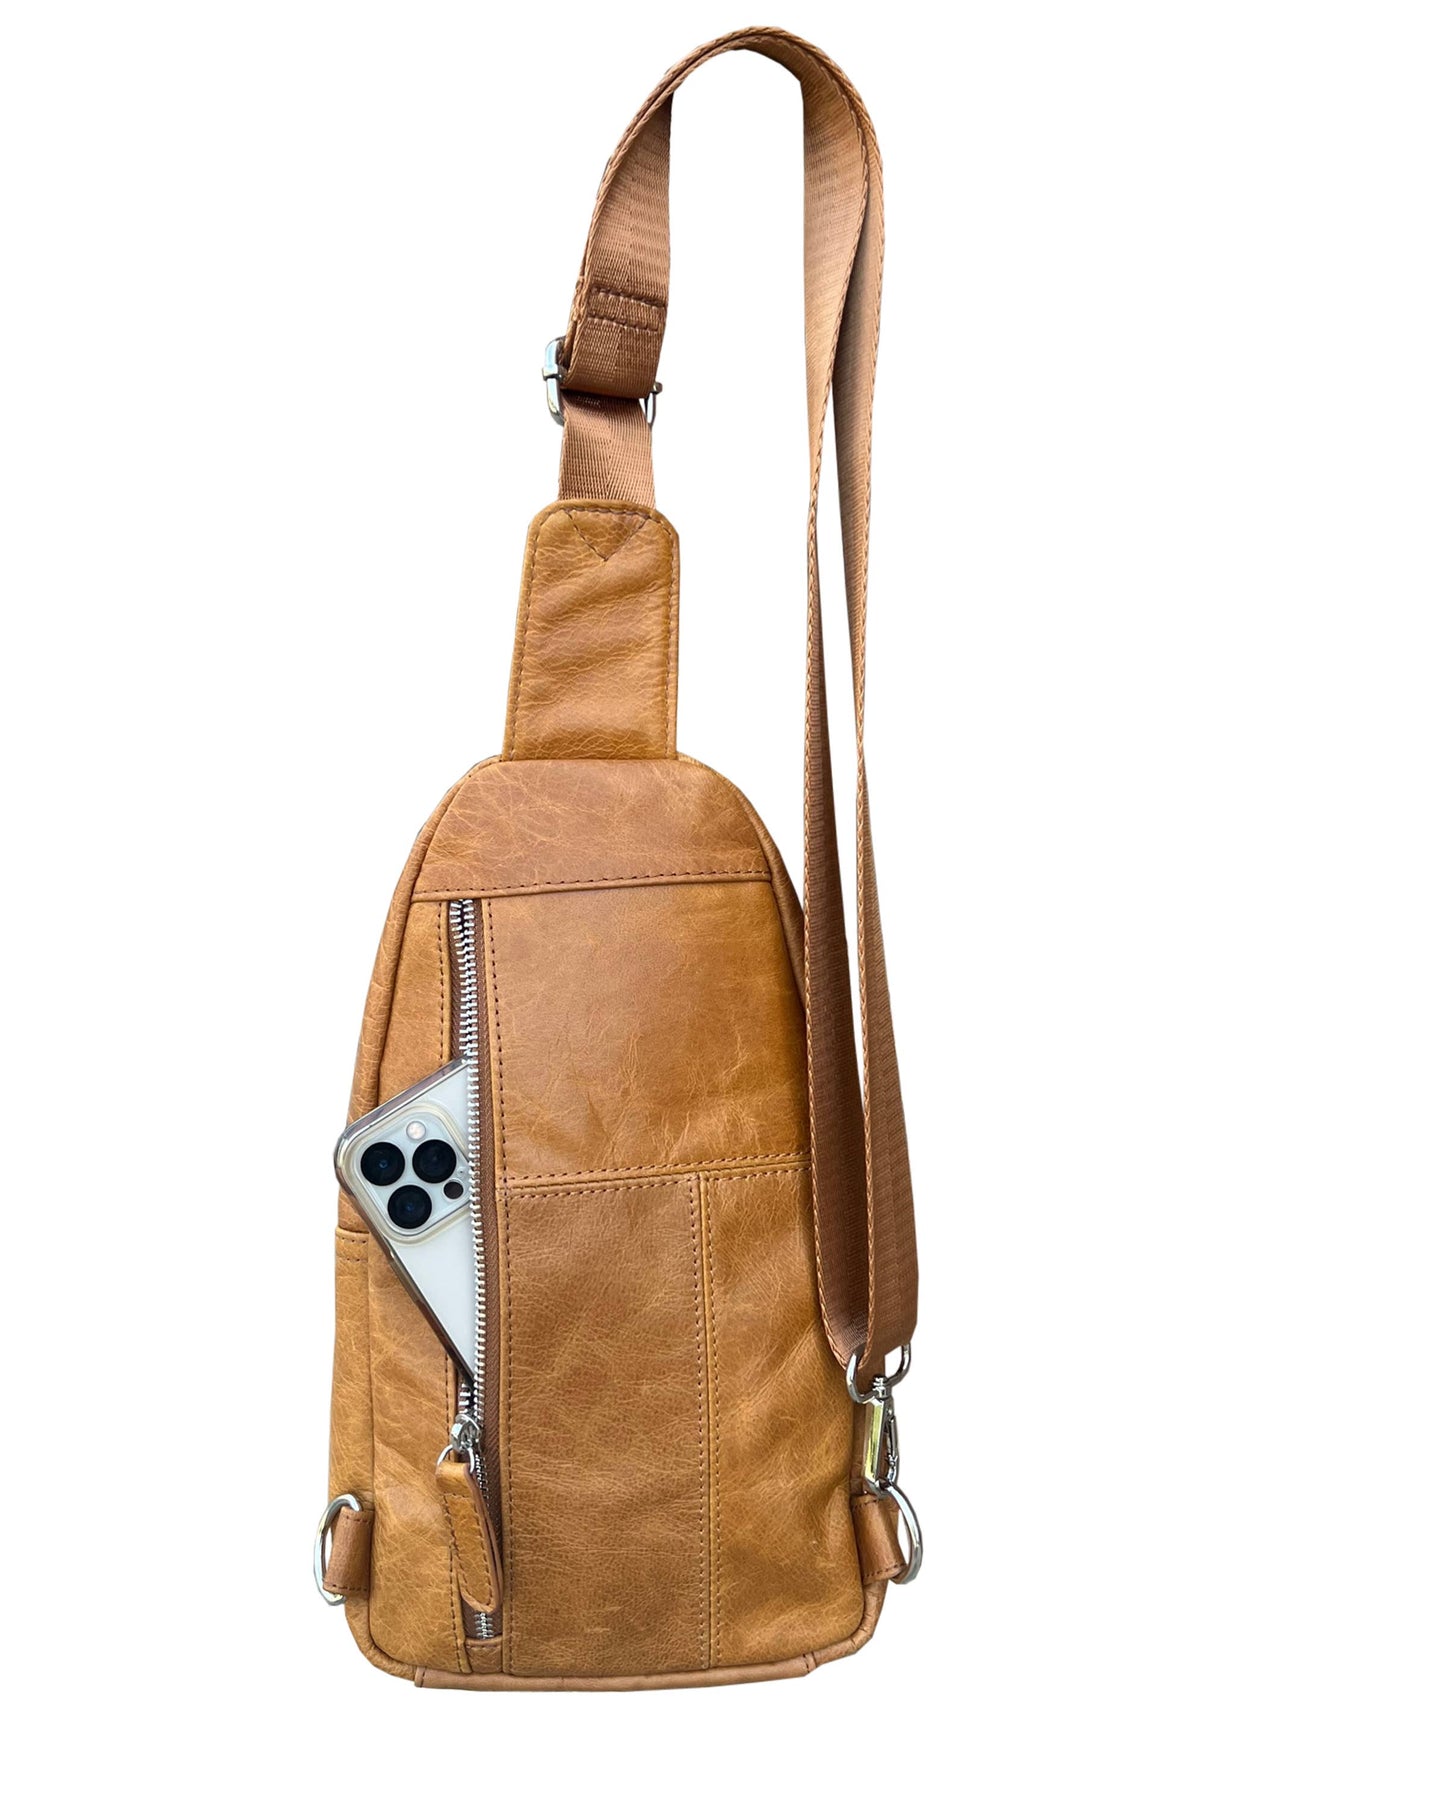 Leather Sling Bag / Backpack